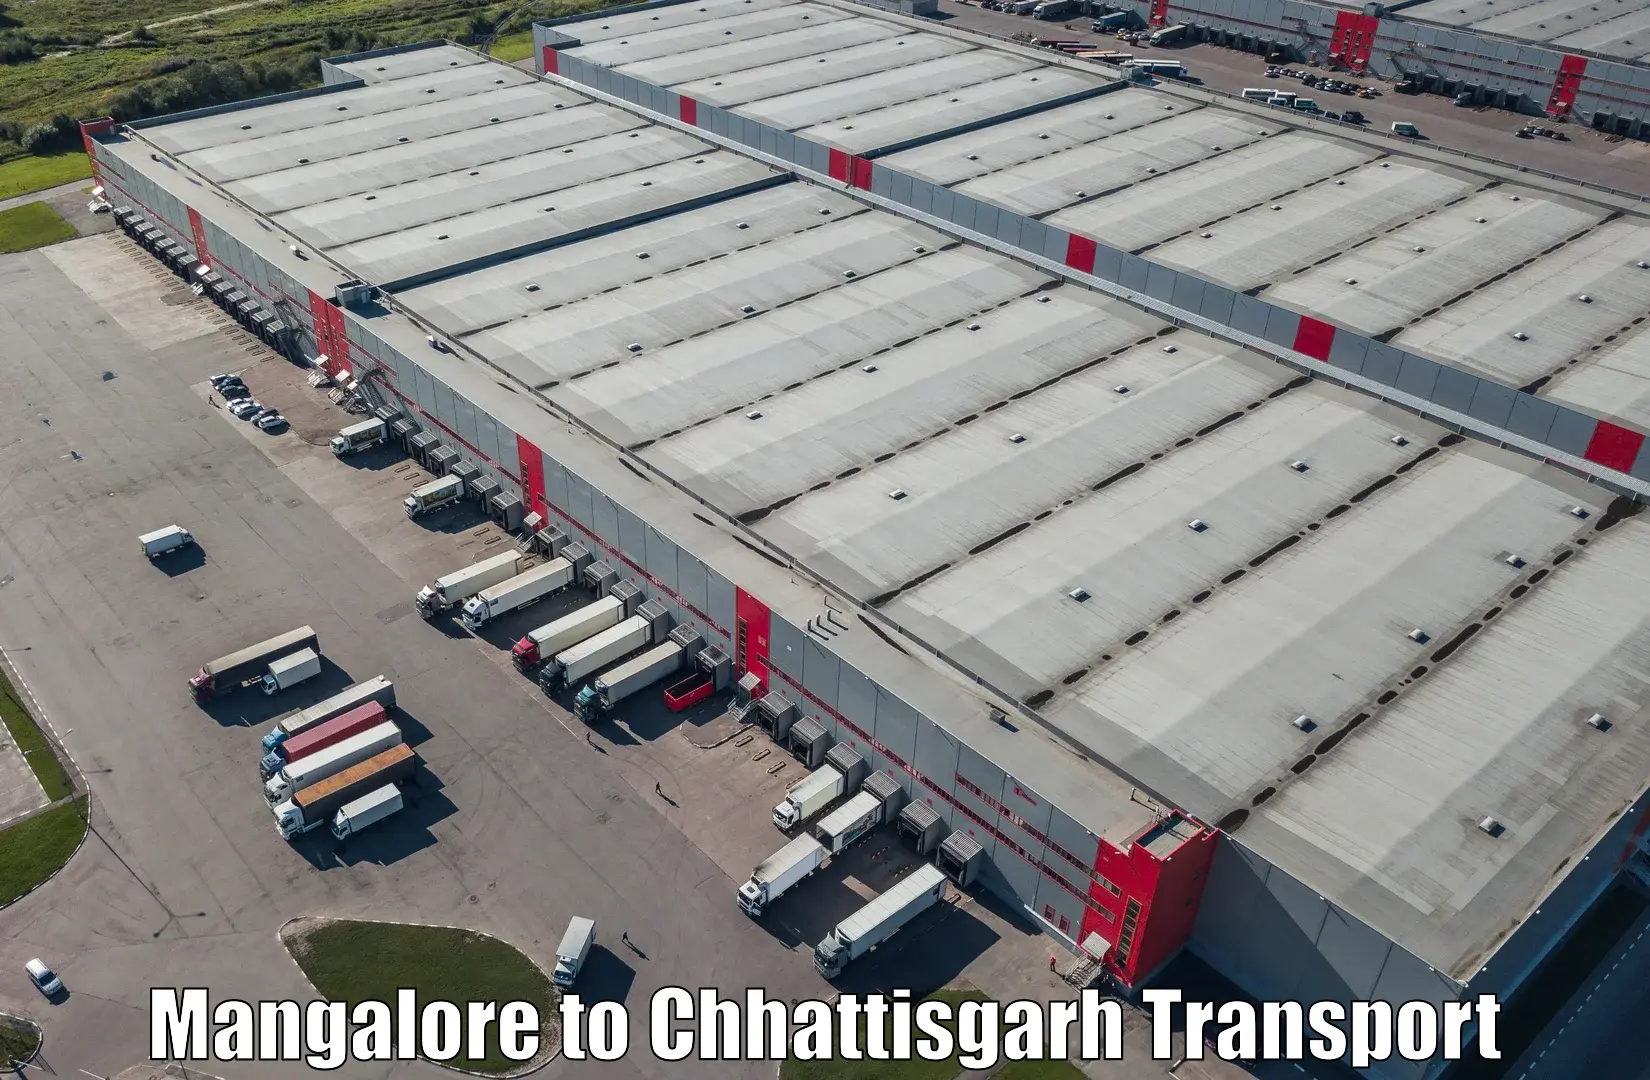 Cycle transportation service Mangalore to Patna Chhattisgarh